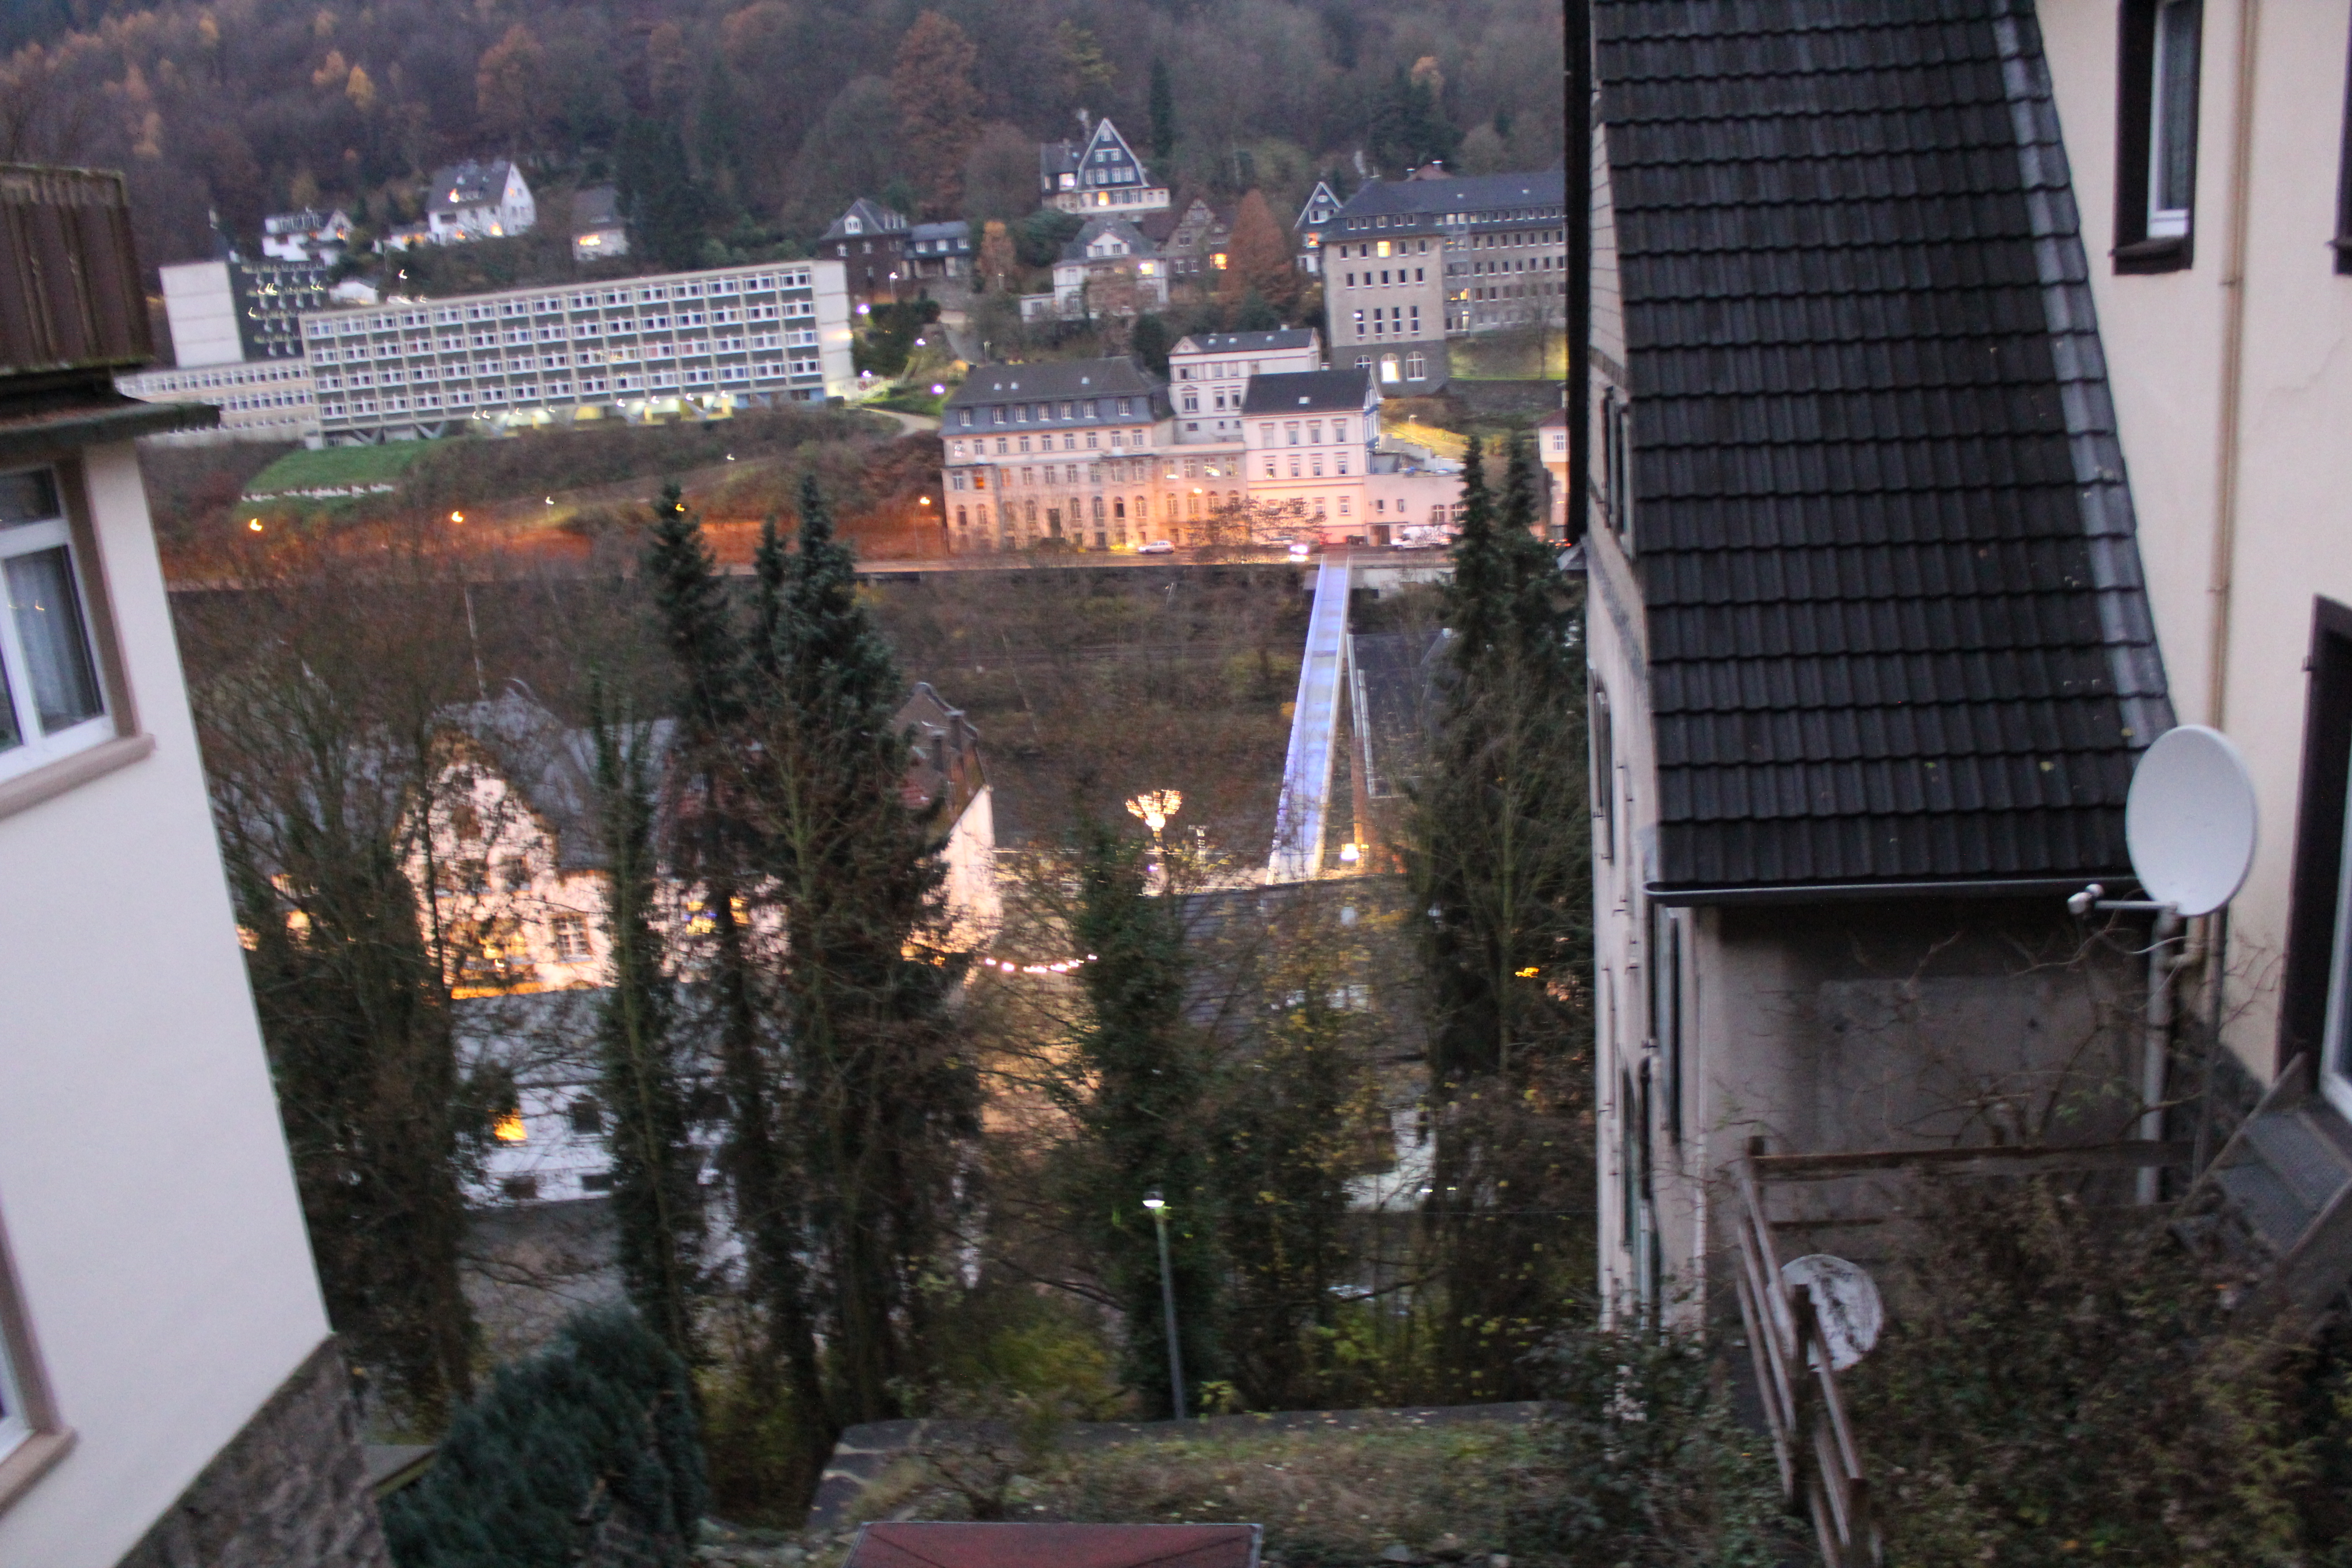 Blick auf die Stadt Altena zu Füssen der Burg